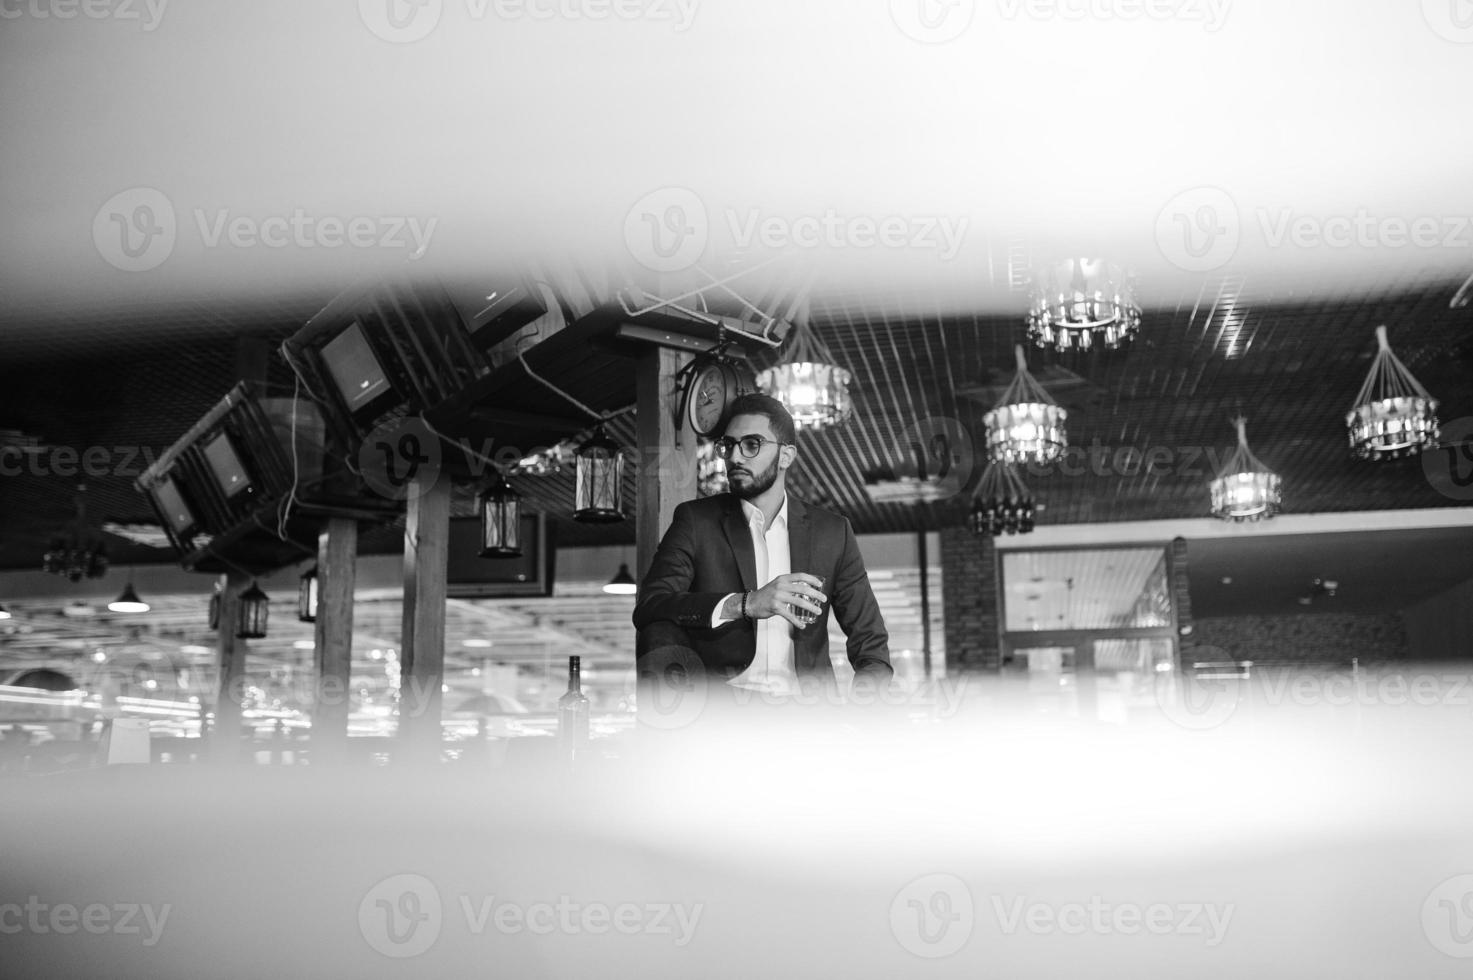 bel homme arabe bien habillé avec un verre de whisky et de cigare posé au pub. photo